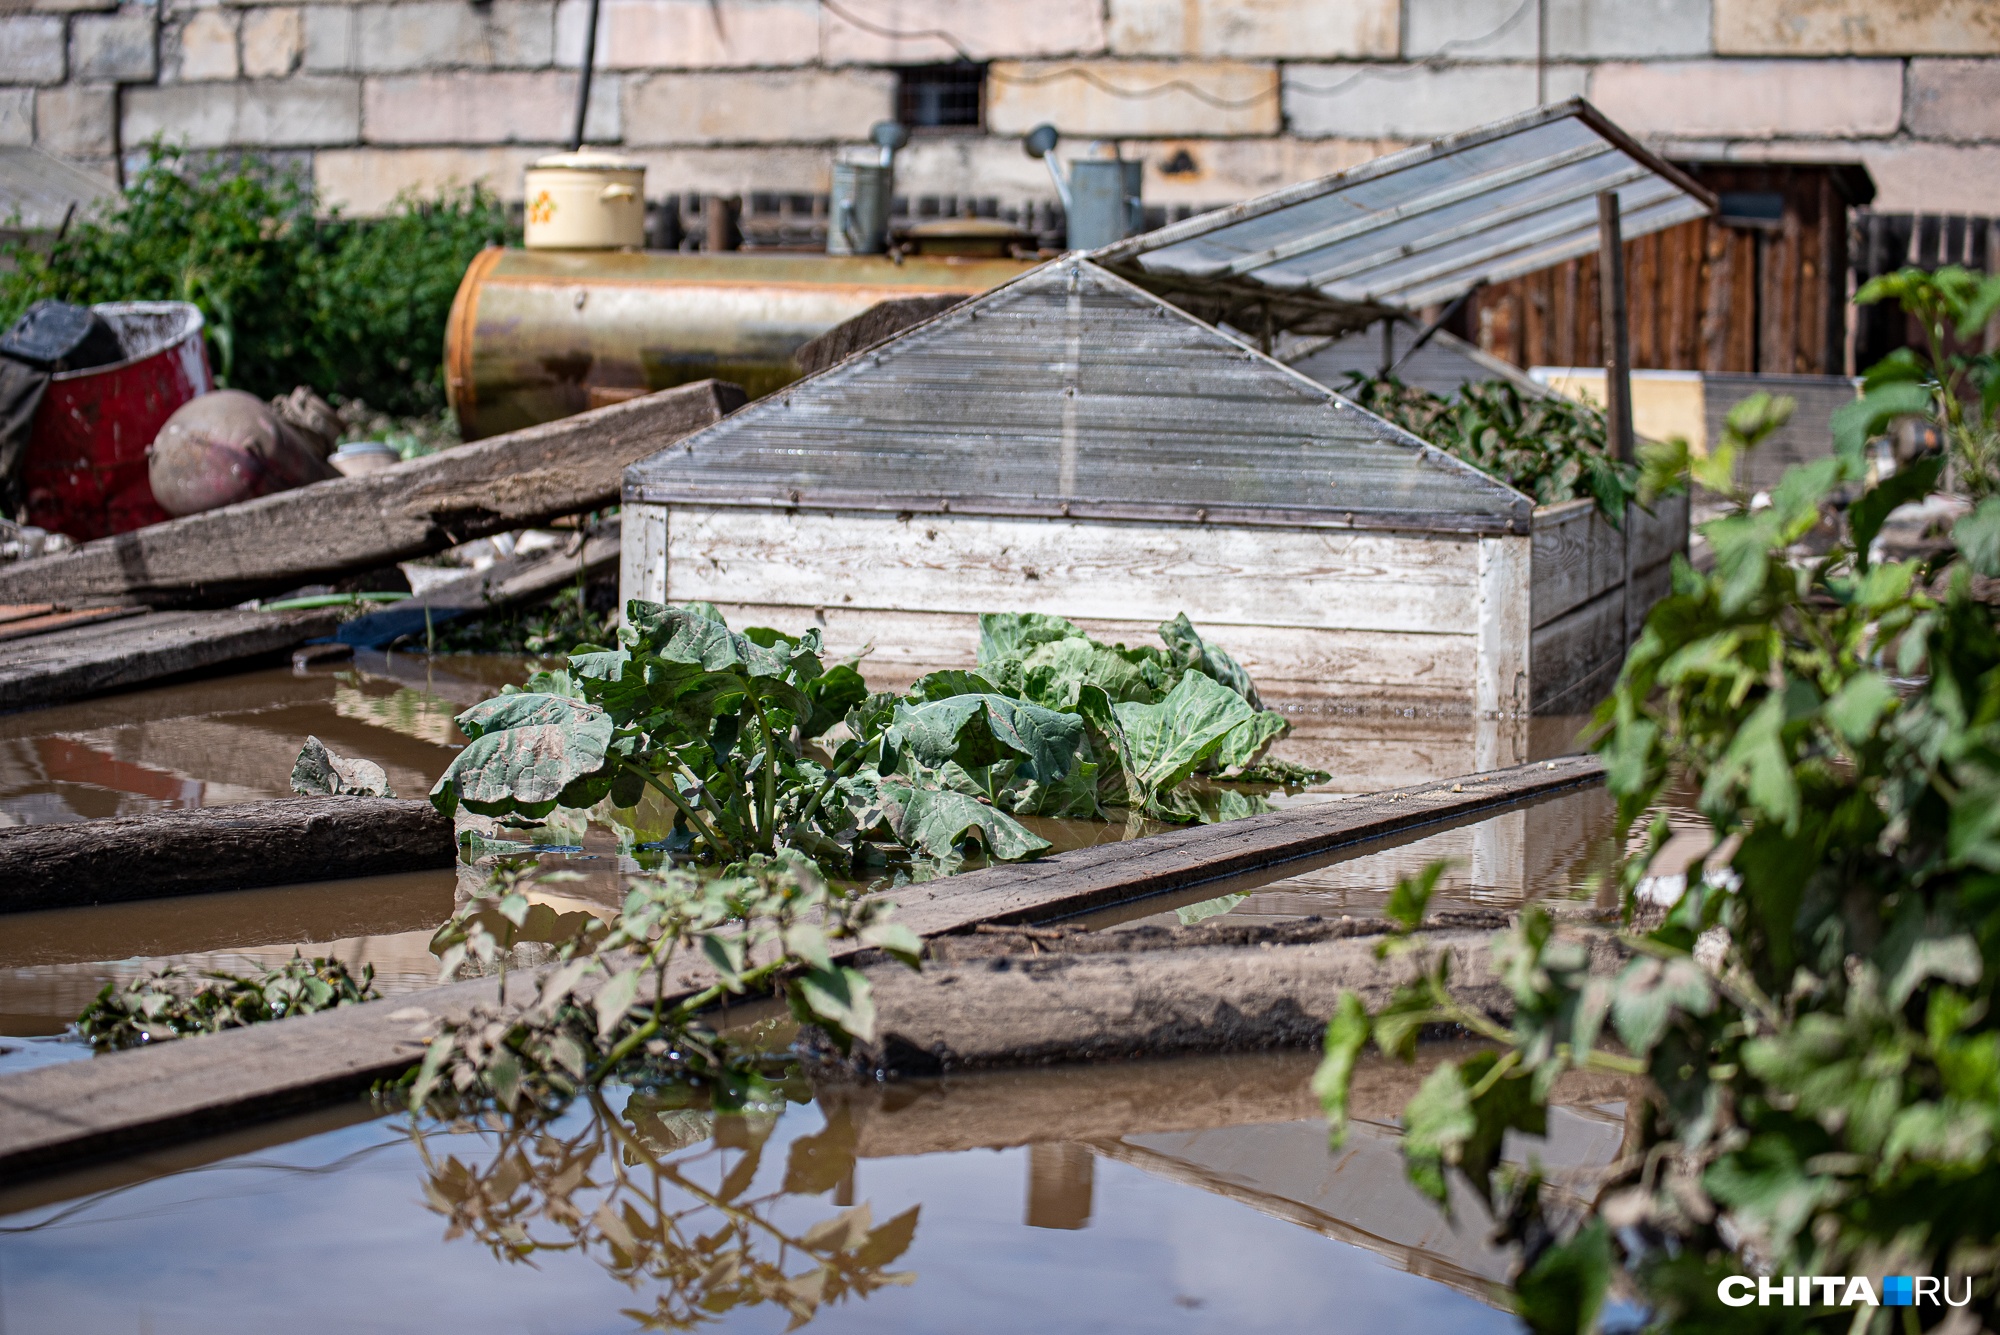 Власти в Чите попросили хозяев затопленных дач приехать на участки